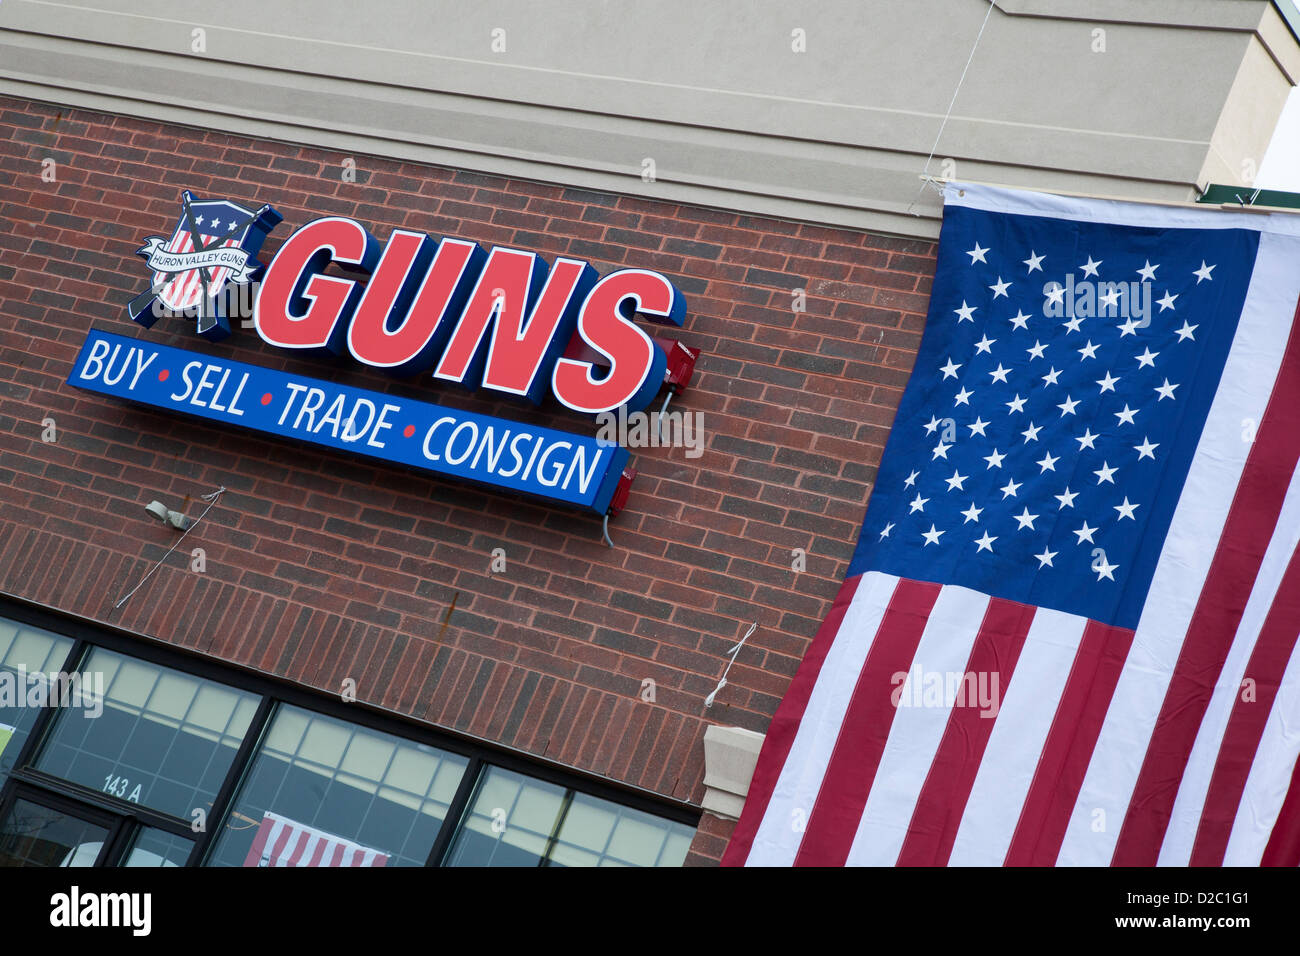 Milford, Michigan - The Huron Valley Waffen Store auf Gun Appreciation Day. Pro-Gun Gruppen versammelten sich am Gewehr Geschäfte landesweit um Waffen zu kaufen und gegen die vorgeschlagenen Grenzwerte auf Waffenbesitz. Angriffswaffen in diesem Laden war so knapp, dass Kunden eine Lotterie für das Recht, einen zu kaufen. Stockfoto